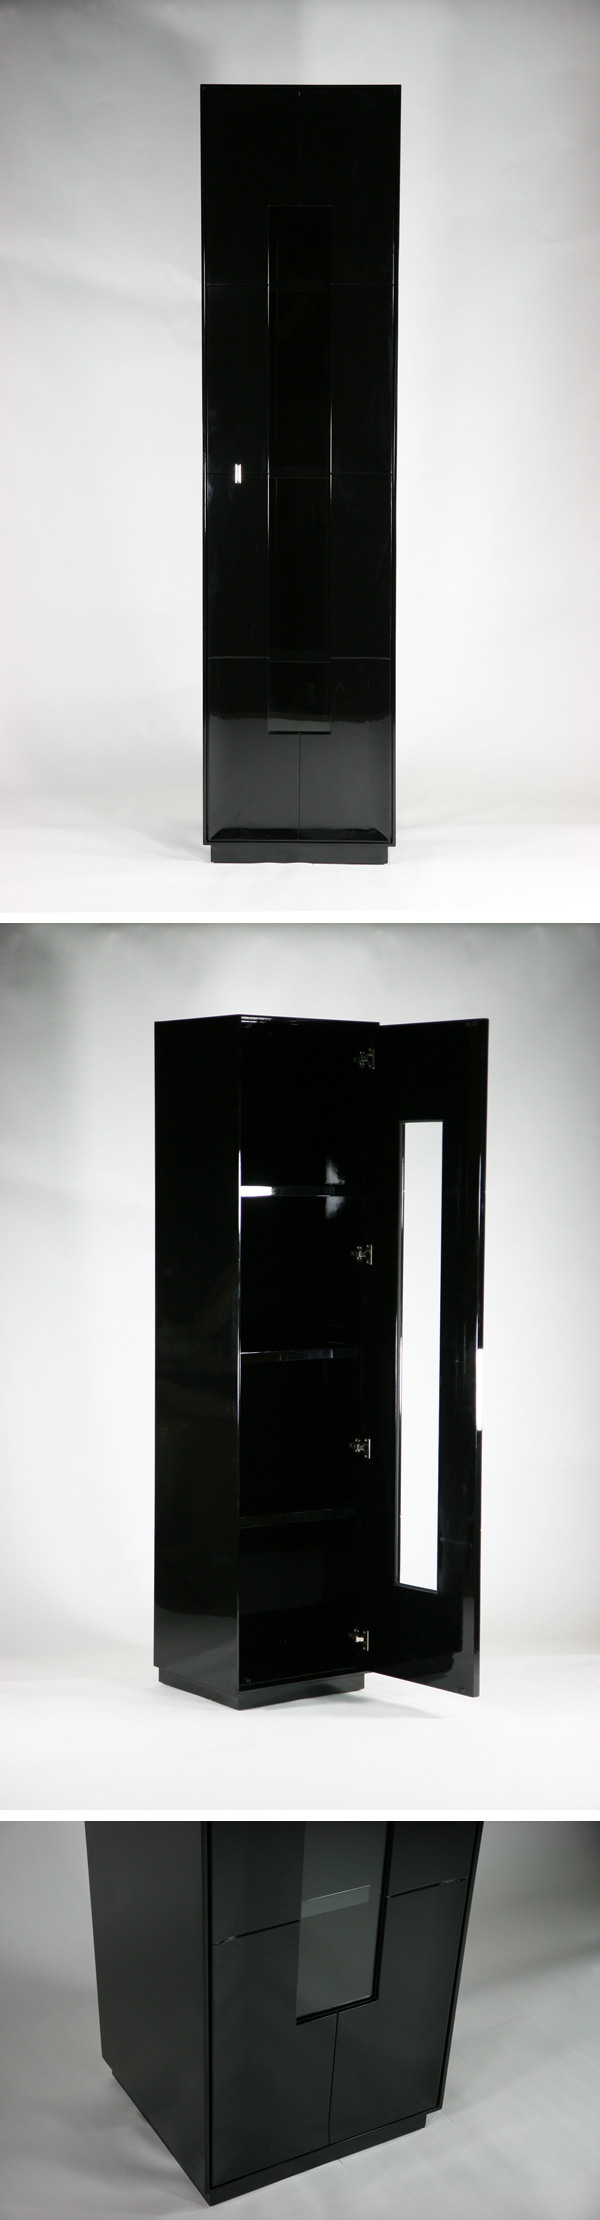 【超歓迎定番】送料無料 新品 大型 1door キャビネット コレクションボード 飾り棚 完成品 ブラック 飾り棚